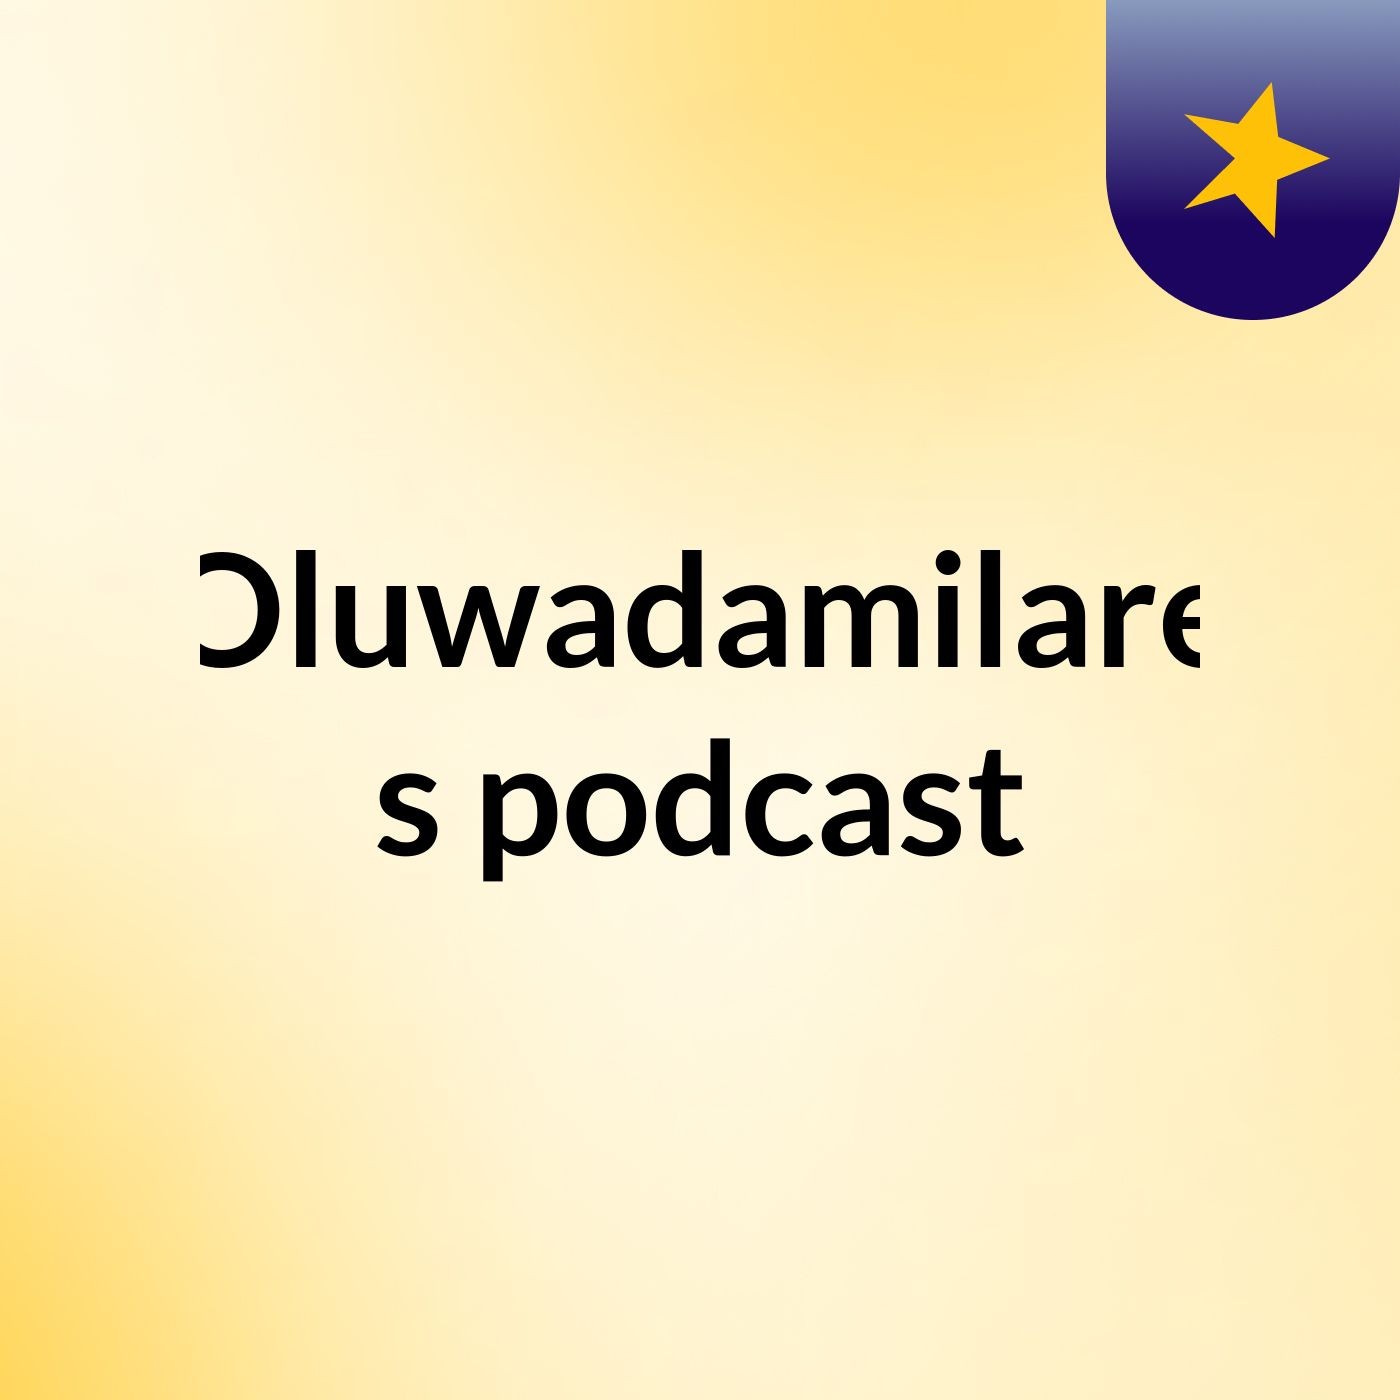 Episode 4 - Oluwadamilare's podcast